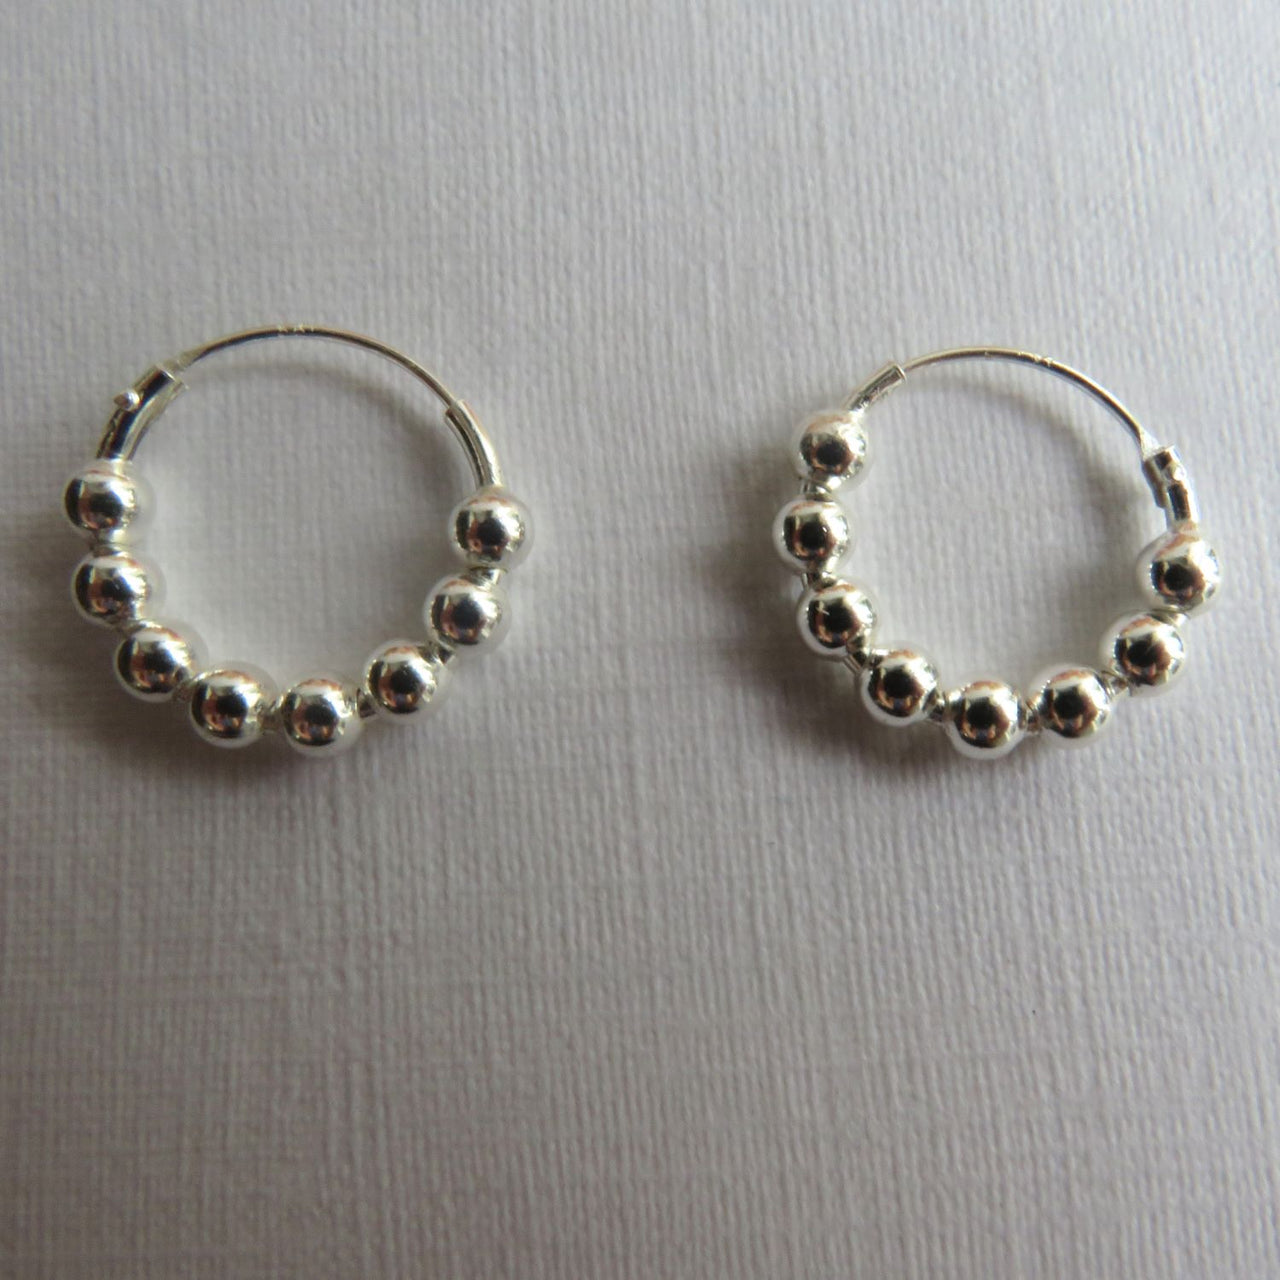 14mm Sterling Silver mini bali ball hoop earrings